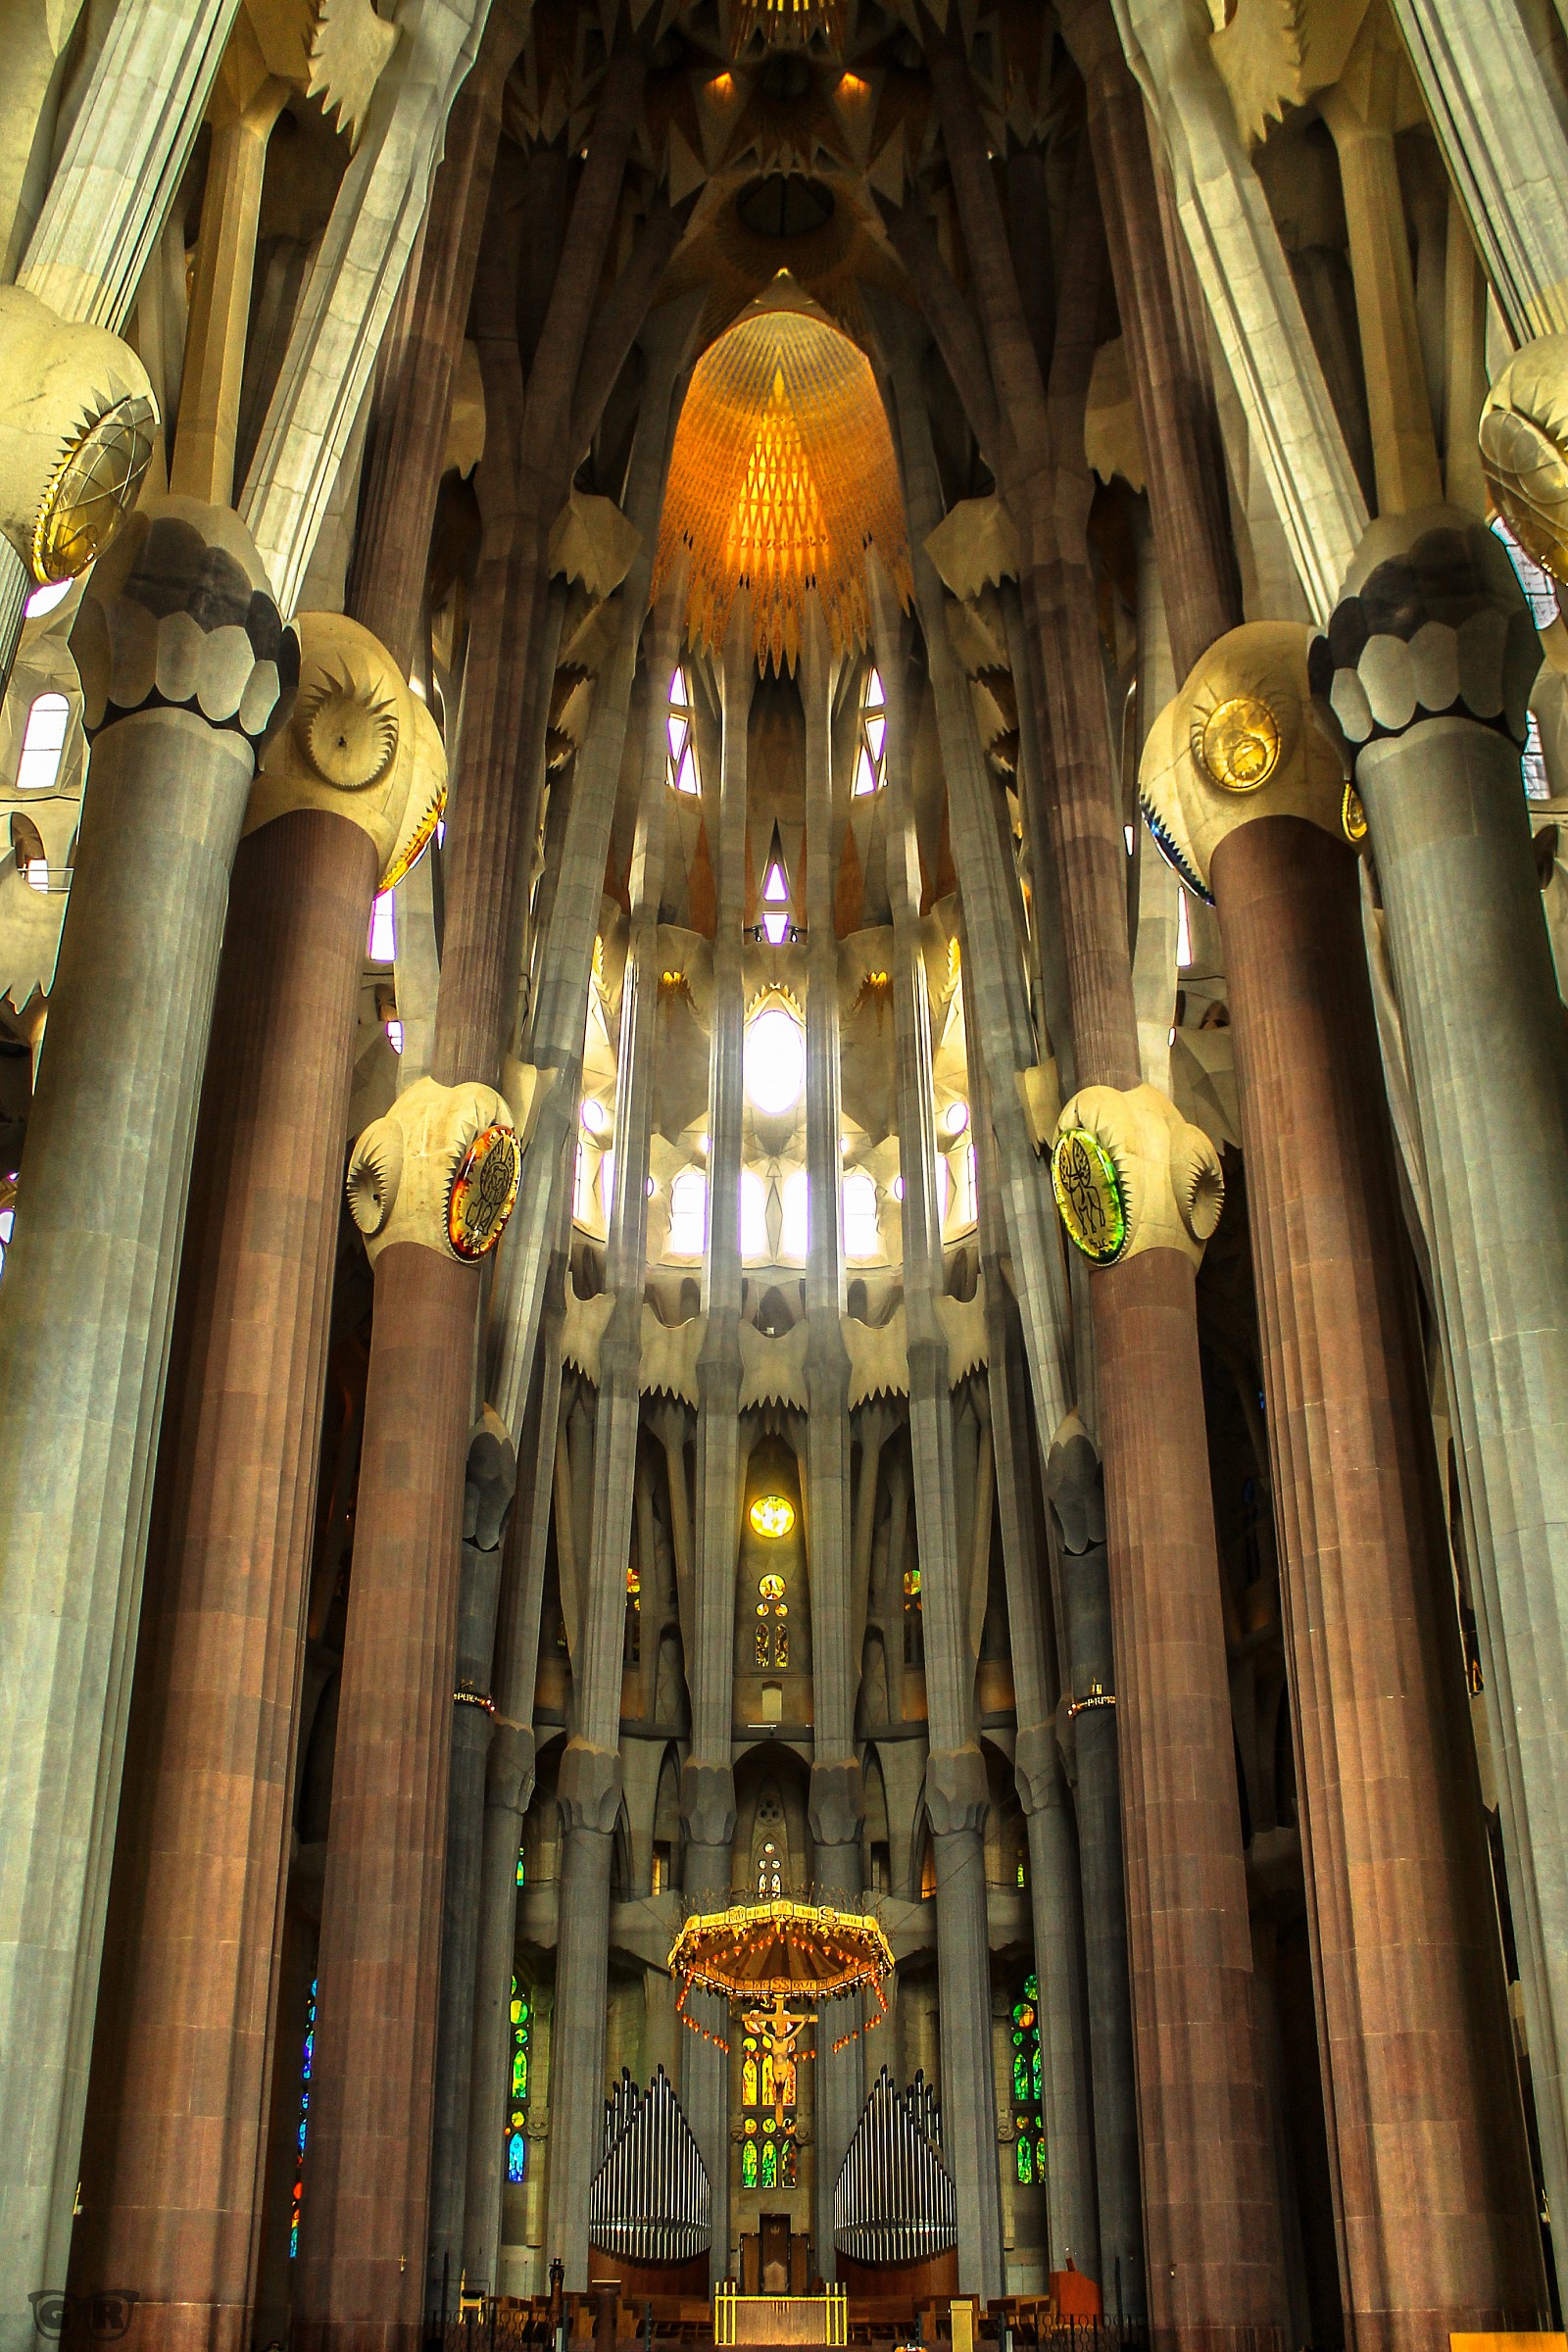 The treasure of Gaudi...